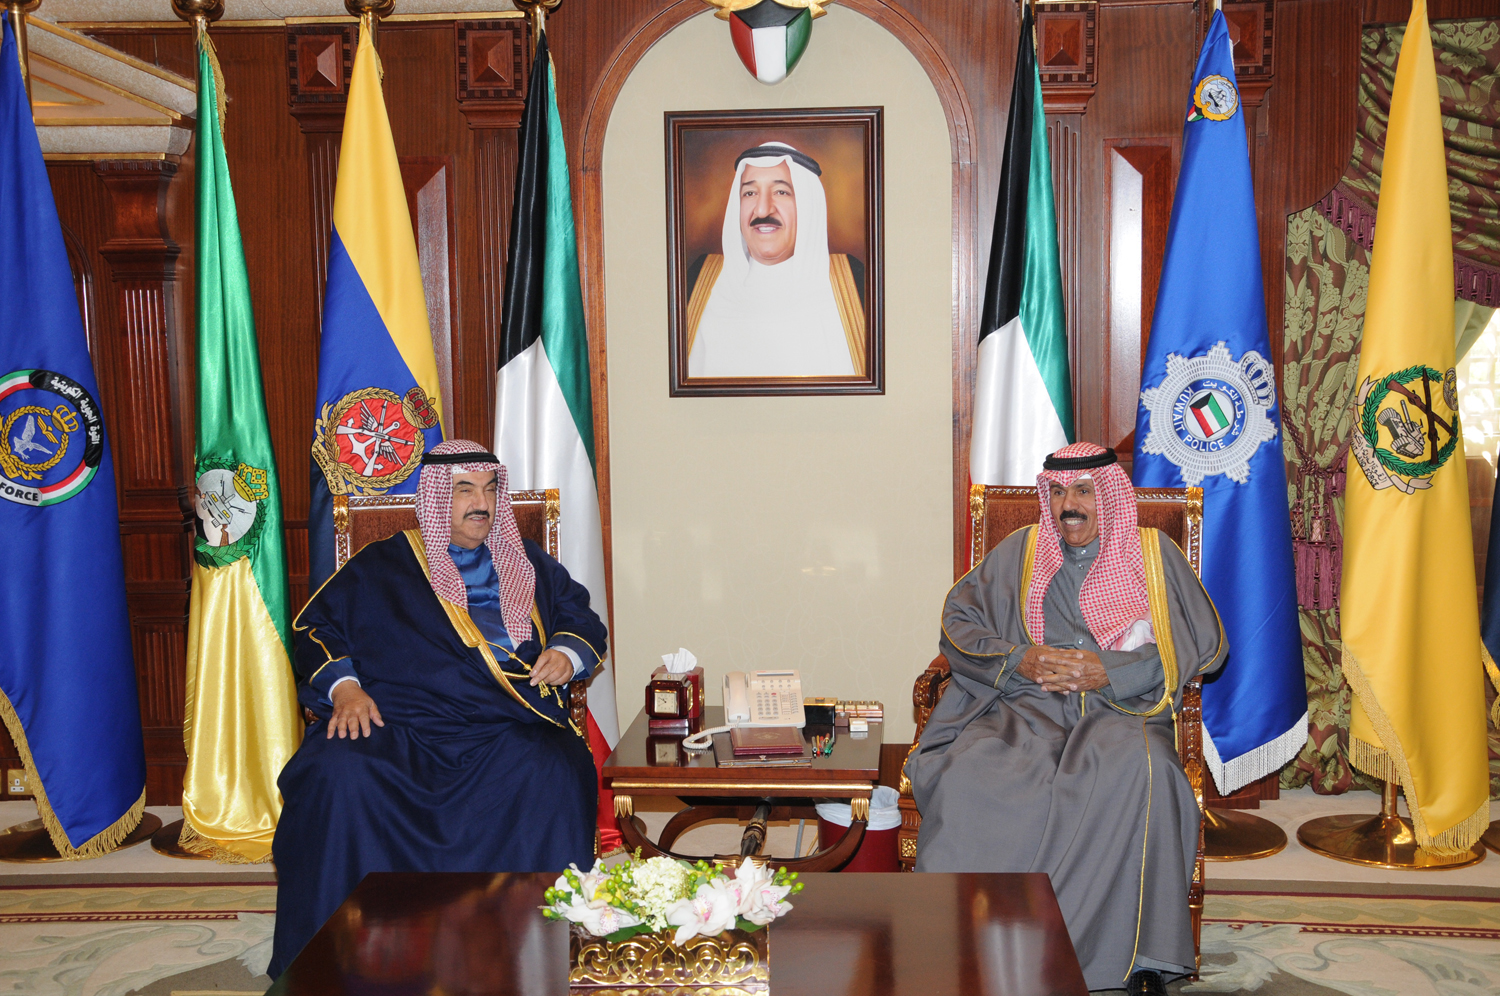 His Highness the Crown Prince Sheikh Nawaf Al-Ahmad Al-Jaber Al-Sabah received His Highness Sheikh Nasser Al-Mohammad Al-Ahmad Al-Sabah